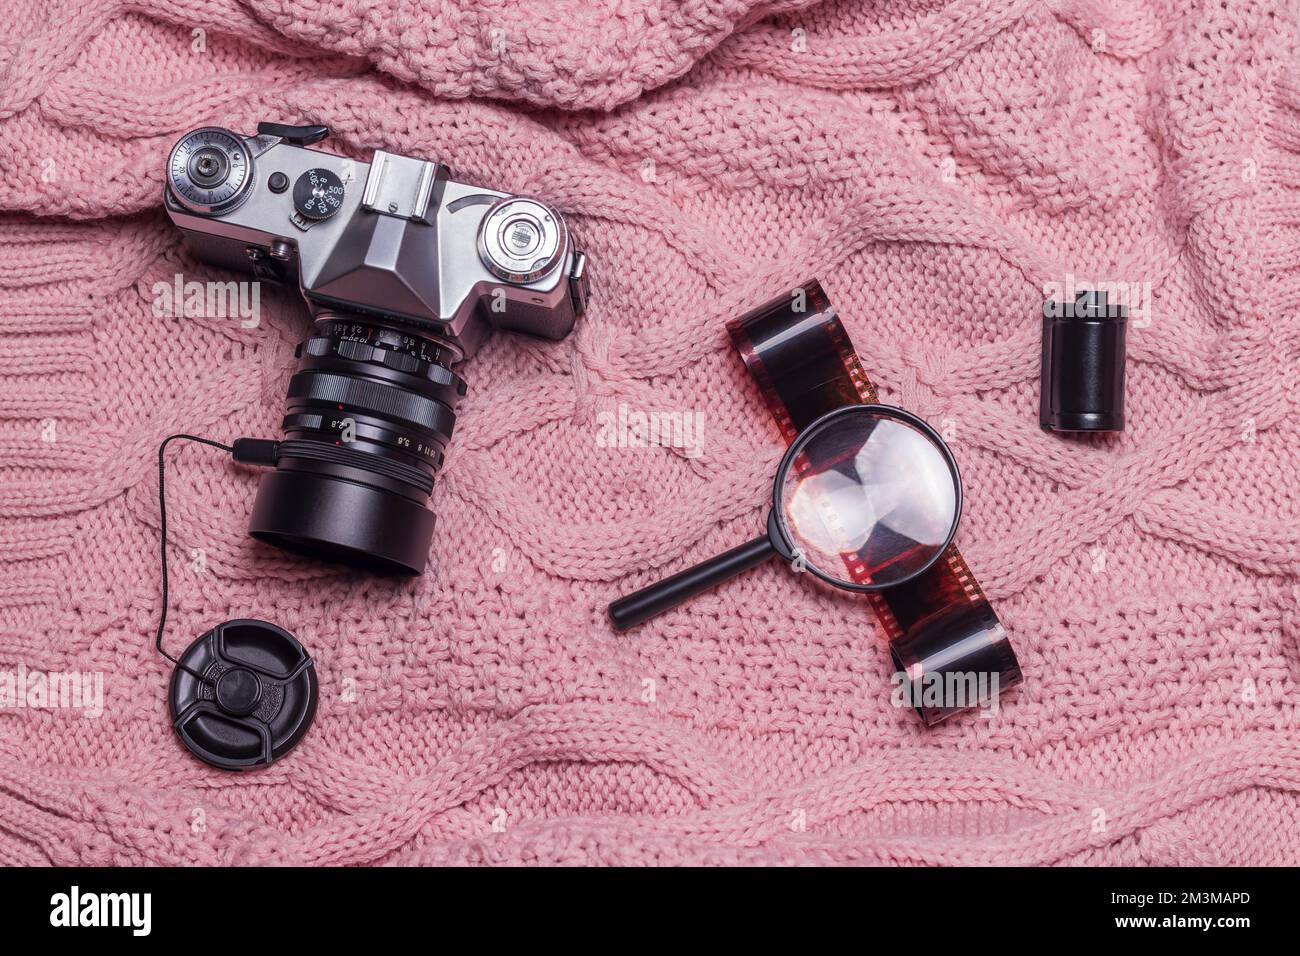 Un ancien appareil photo rétro, un film photographique et une loupe se trouvent sur un pull en laine rose. Banque D'Images